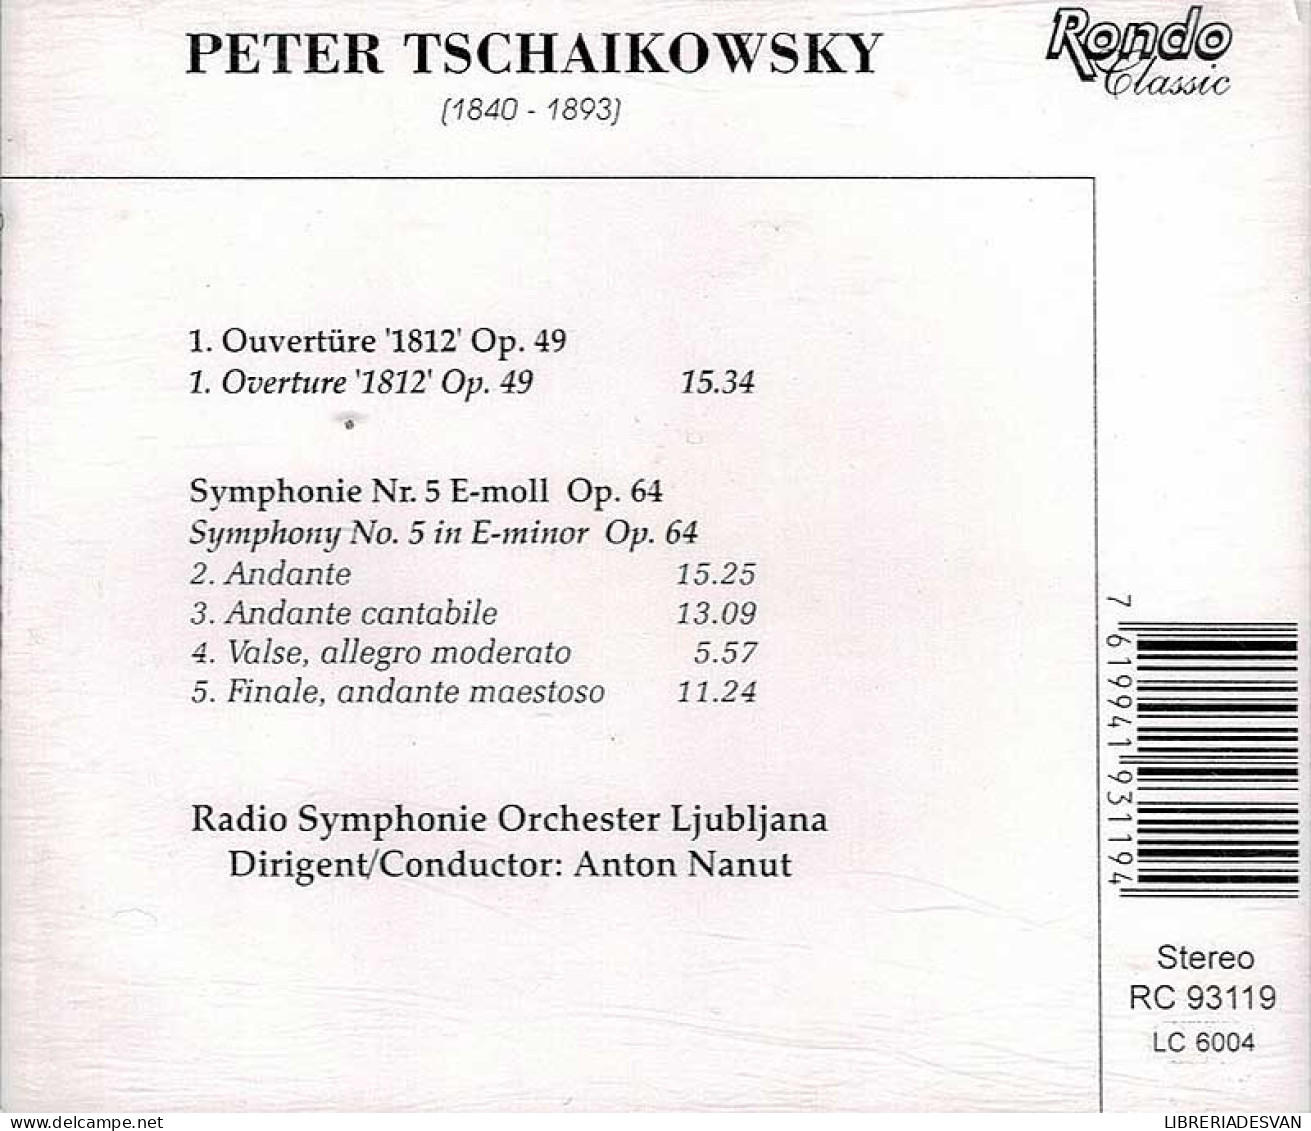 Peter Tschaikowsky - Overture 1812 Op. 49. Symphony No. 5 Op. 64. CD - Classical